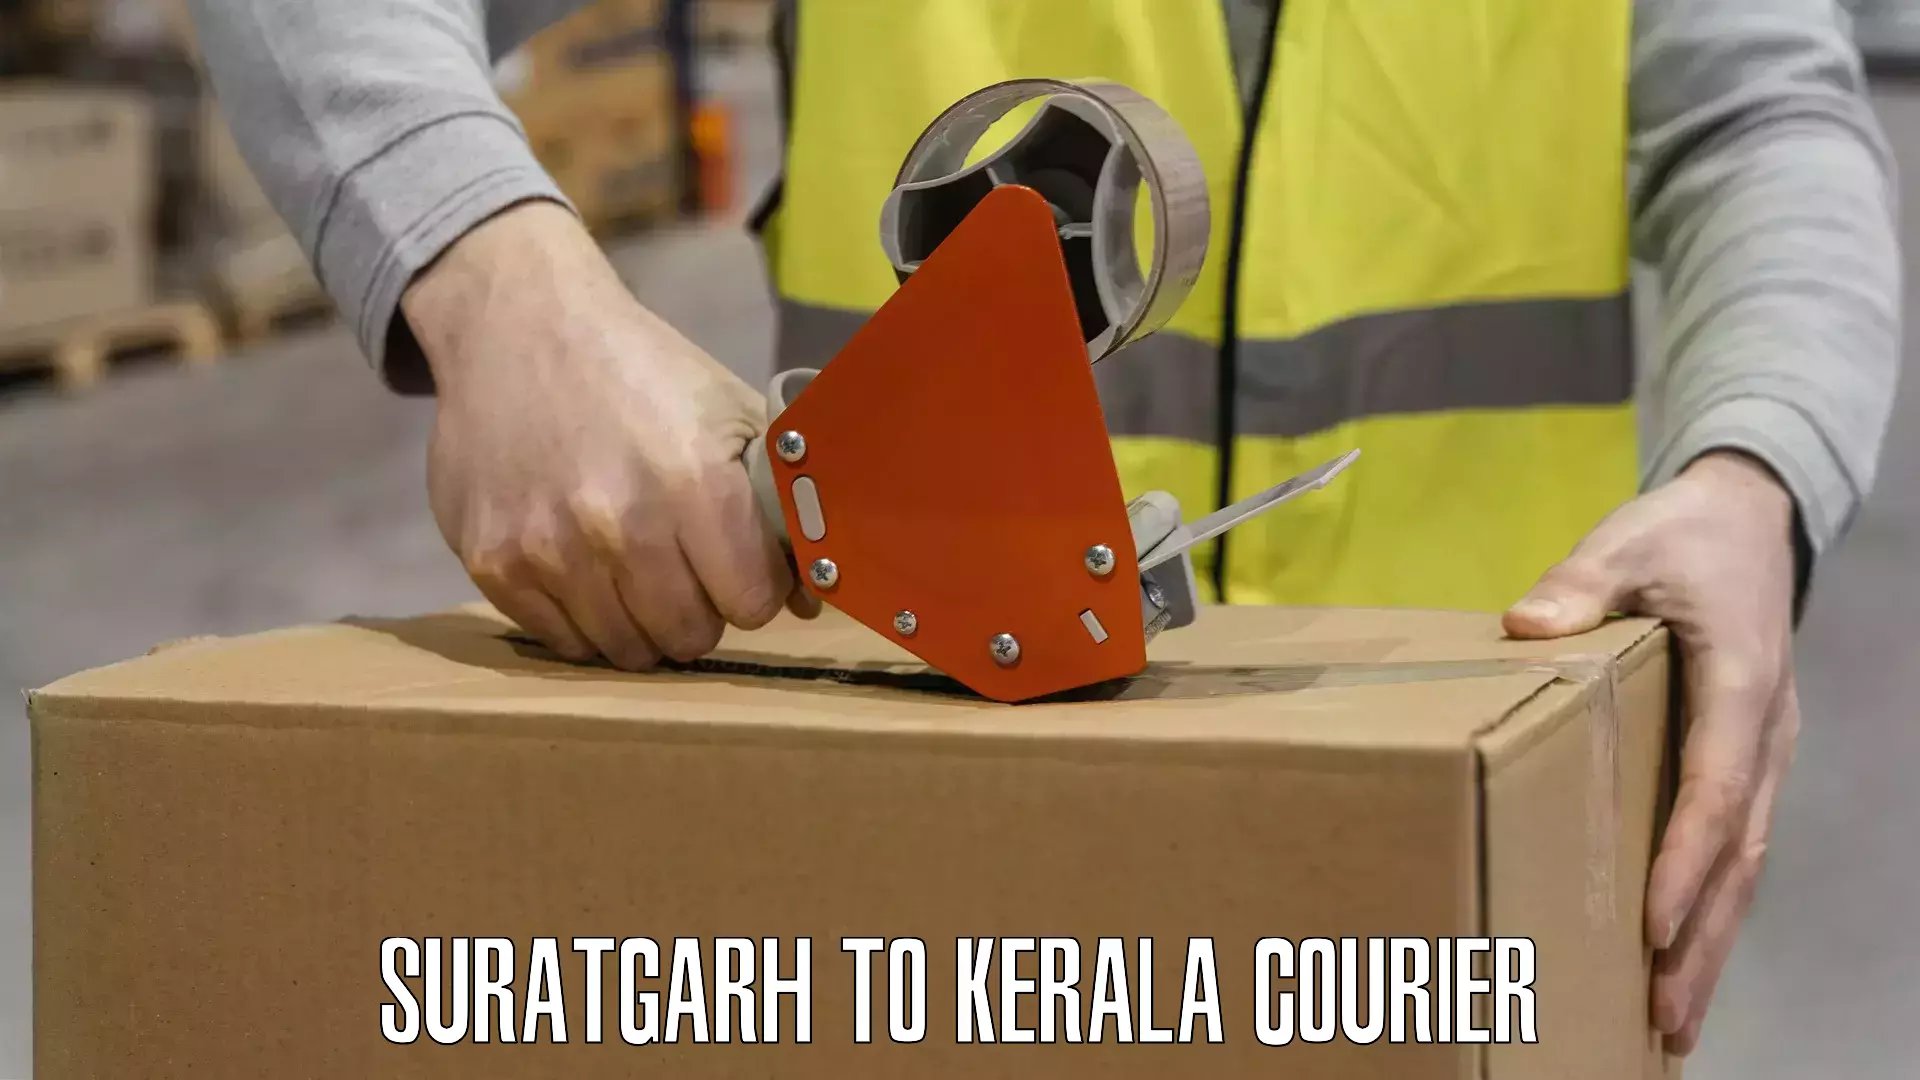 Nationwide courier service Suratgarh to Kalpetta